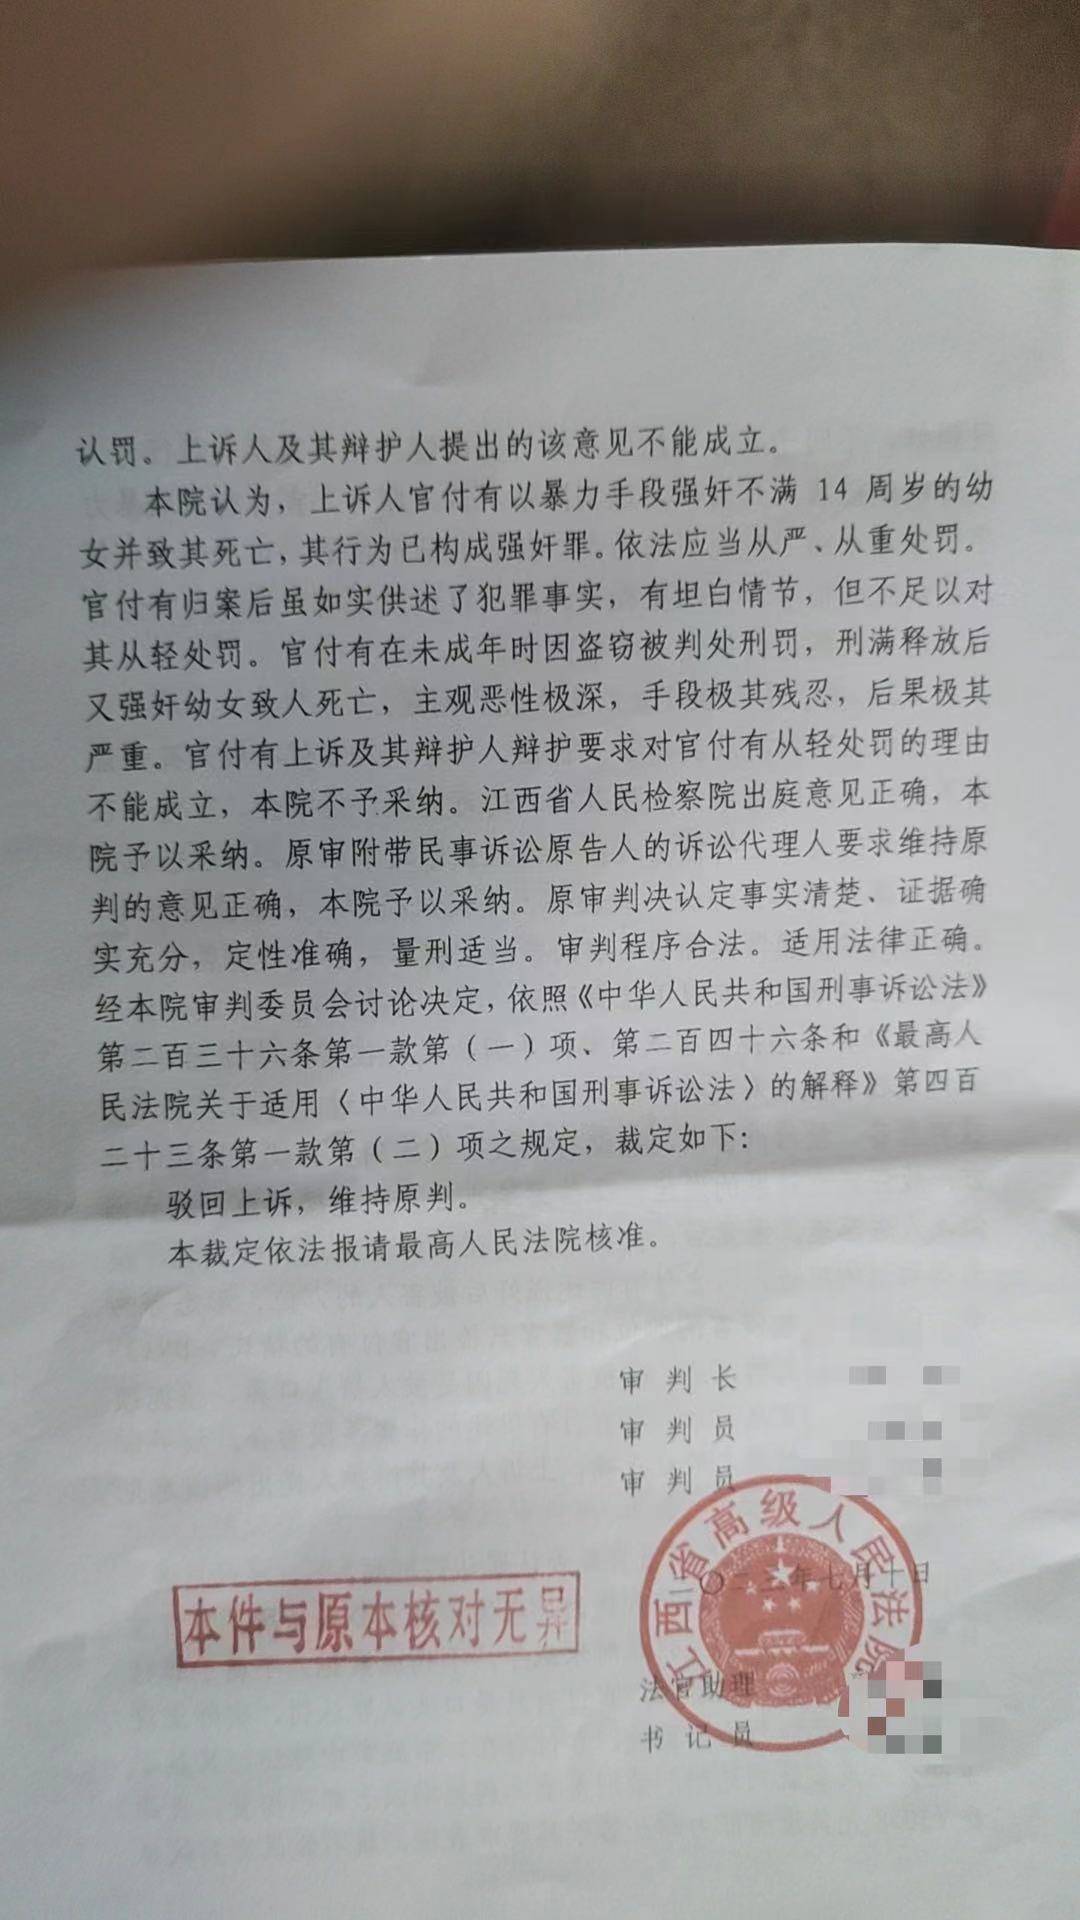 武汉手机维修:江西上饶一男子强奸13岁女孩致死案二审维持死刑原判